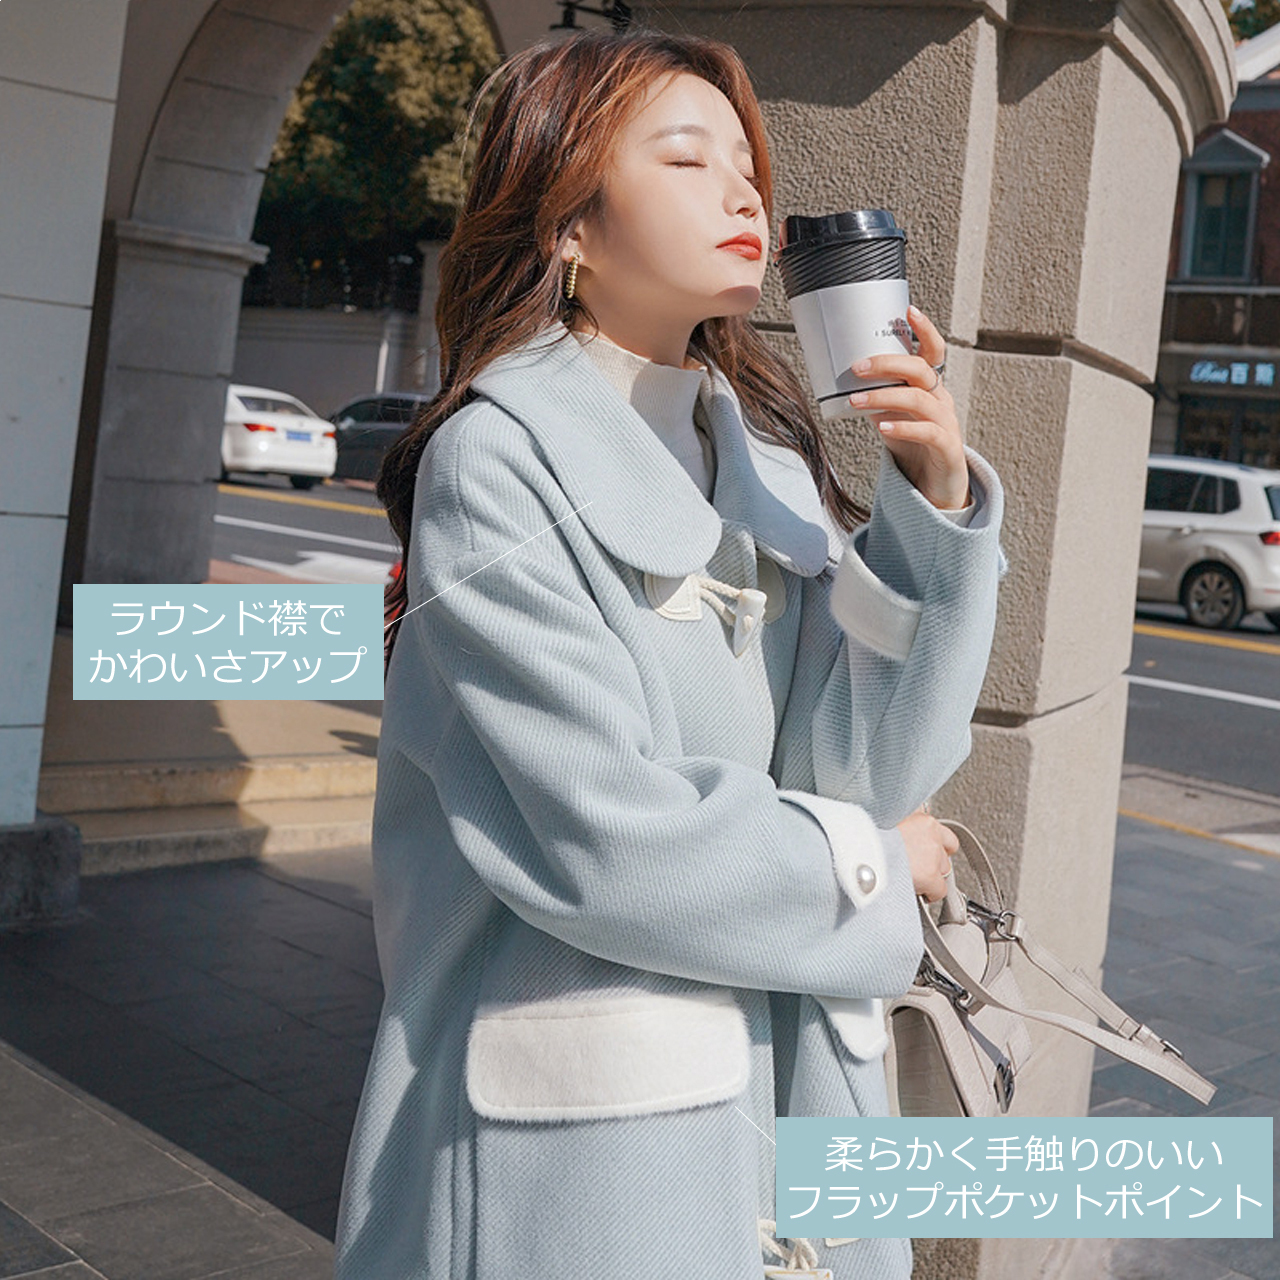 Regit 即納 Sky Blue Duffel Long Coat 韓国ファッション ロングコート かわいい 冬用アウター 10代代 コート かわいいコート スカイブルー ダッフルコート ラウンド襟 丸いえり Regit